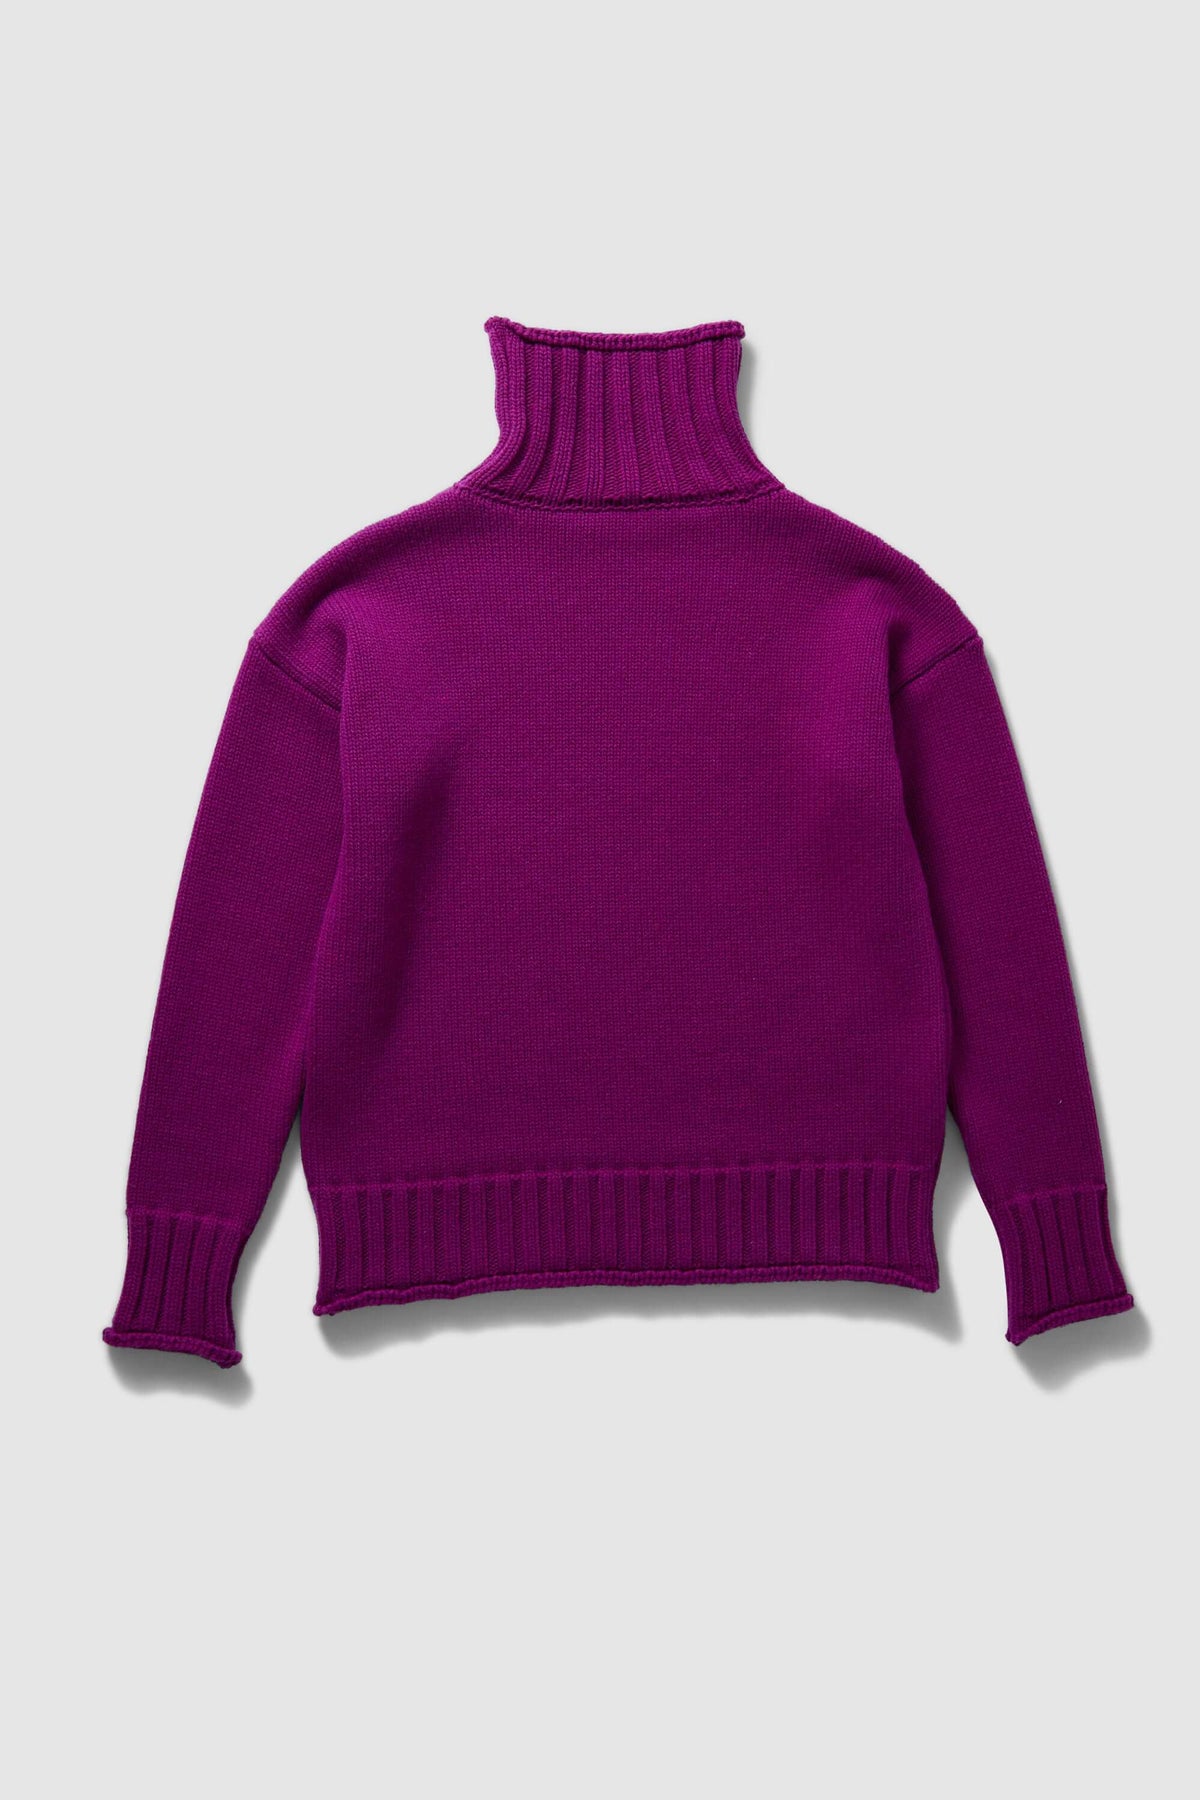 Opal sweater in Cardinal knit